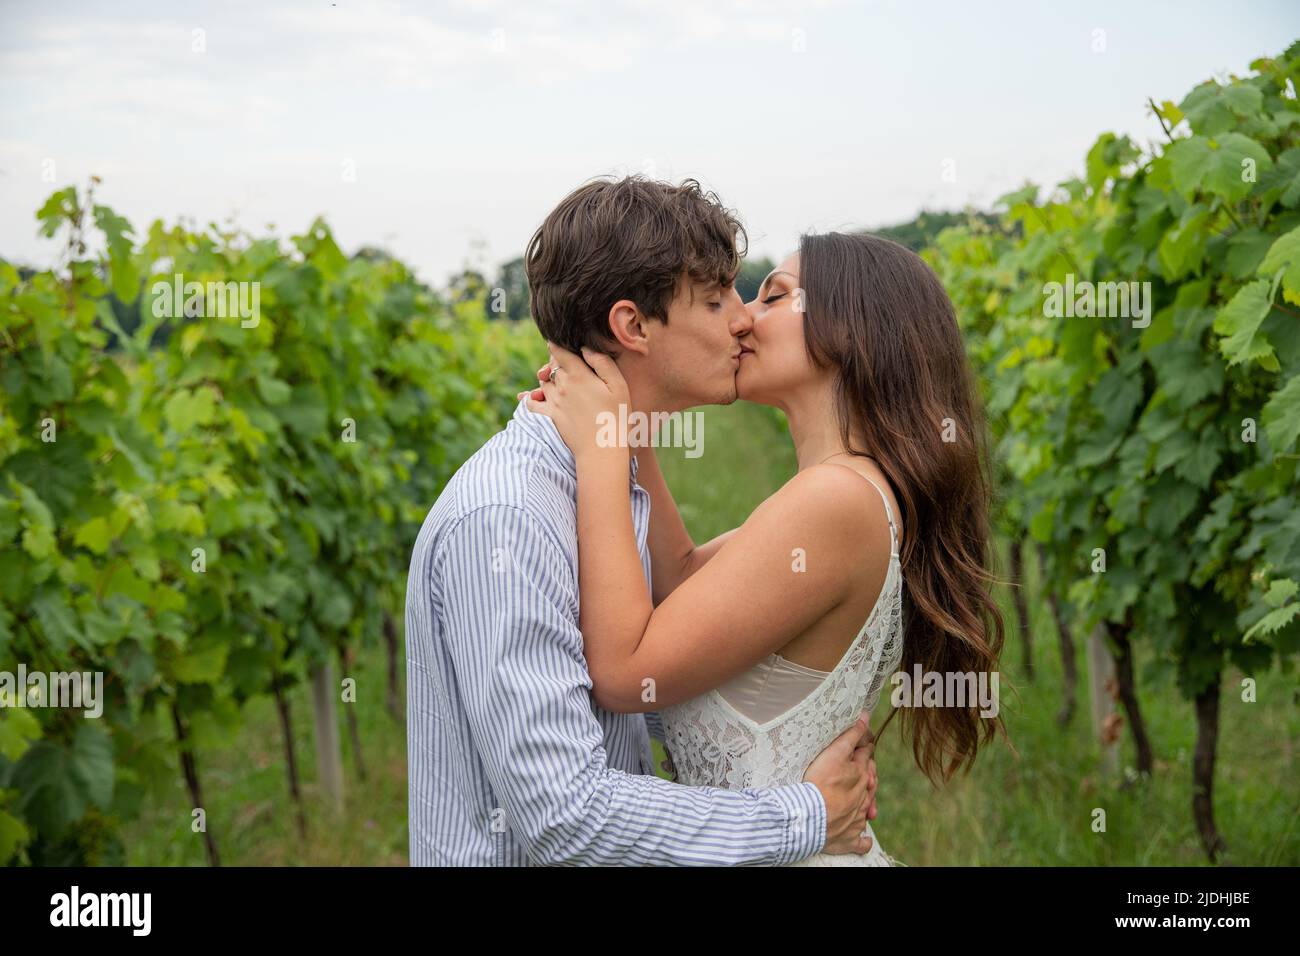 Coppia amorevole bacio mentre sono in mezzo ai campi d'uva, giovani appassionati amanti Foto Stock